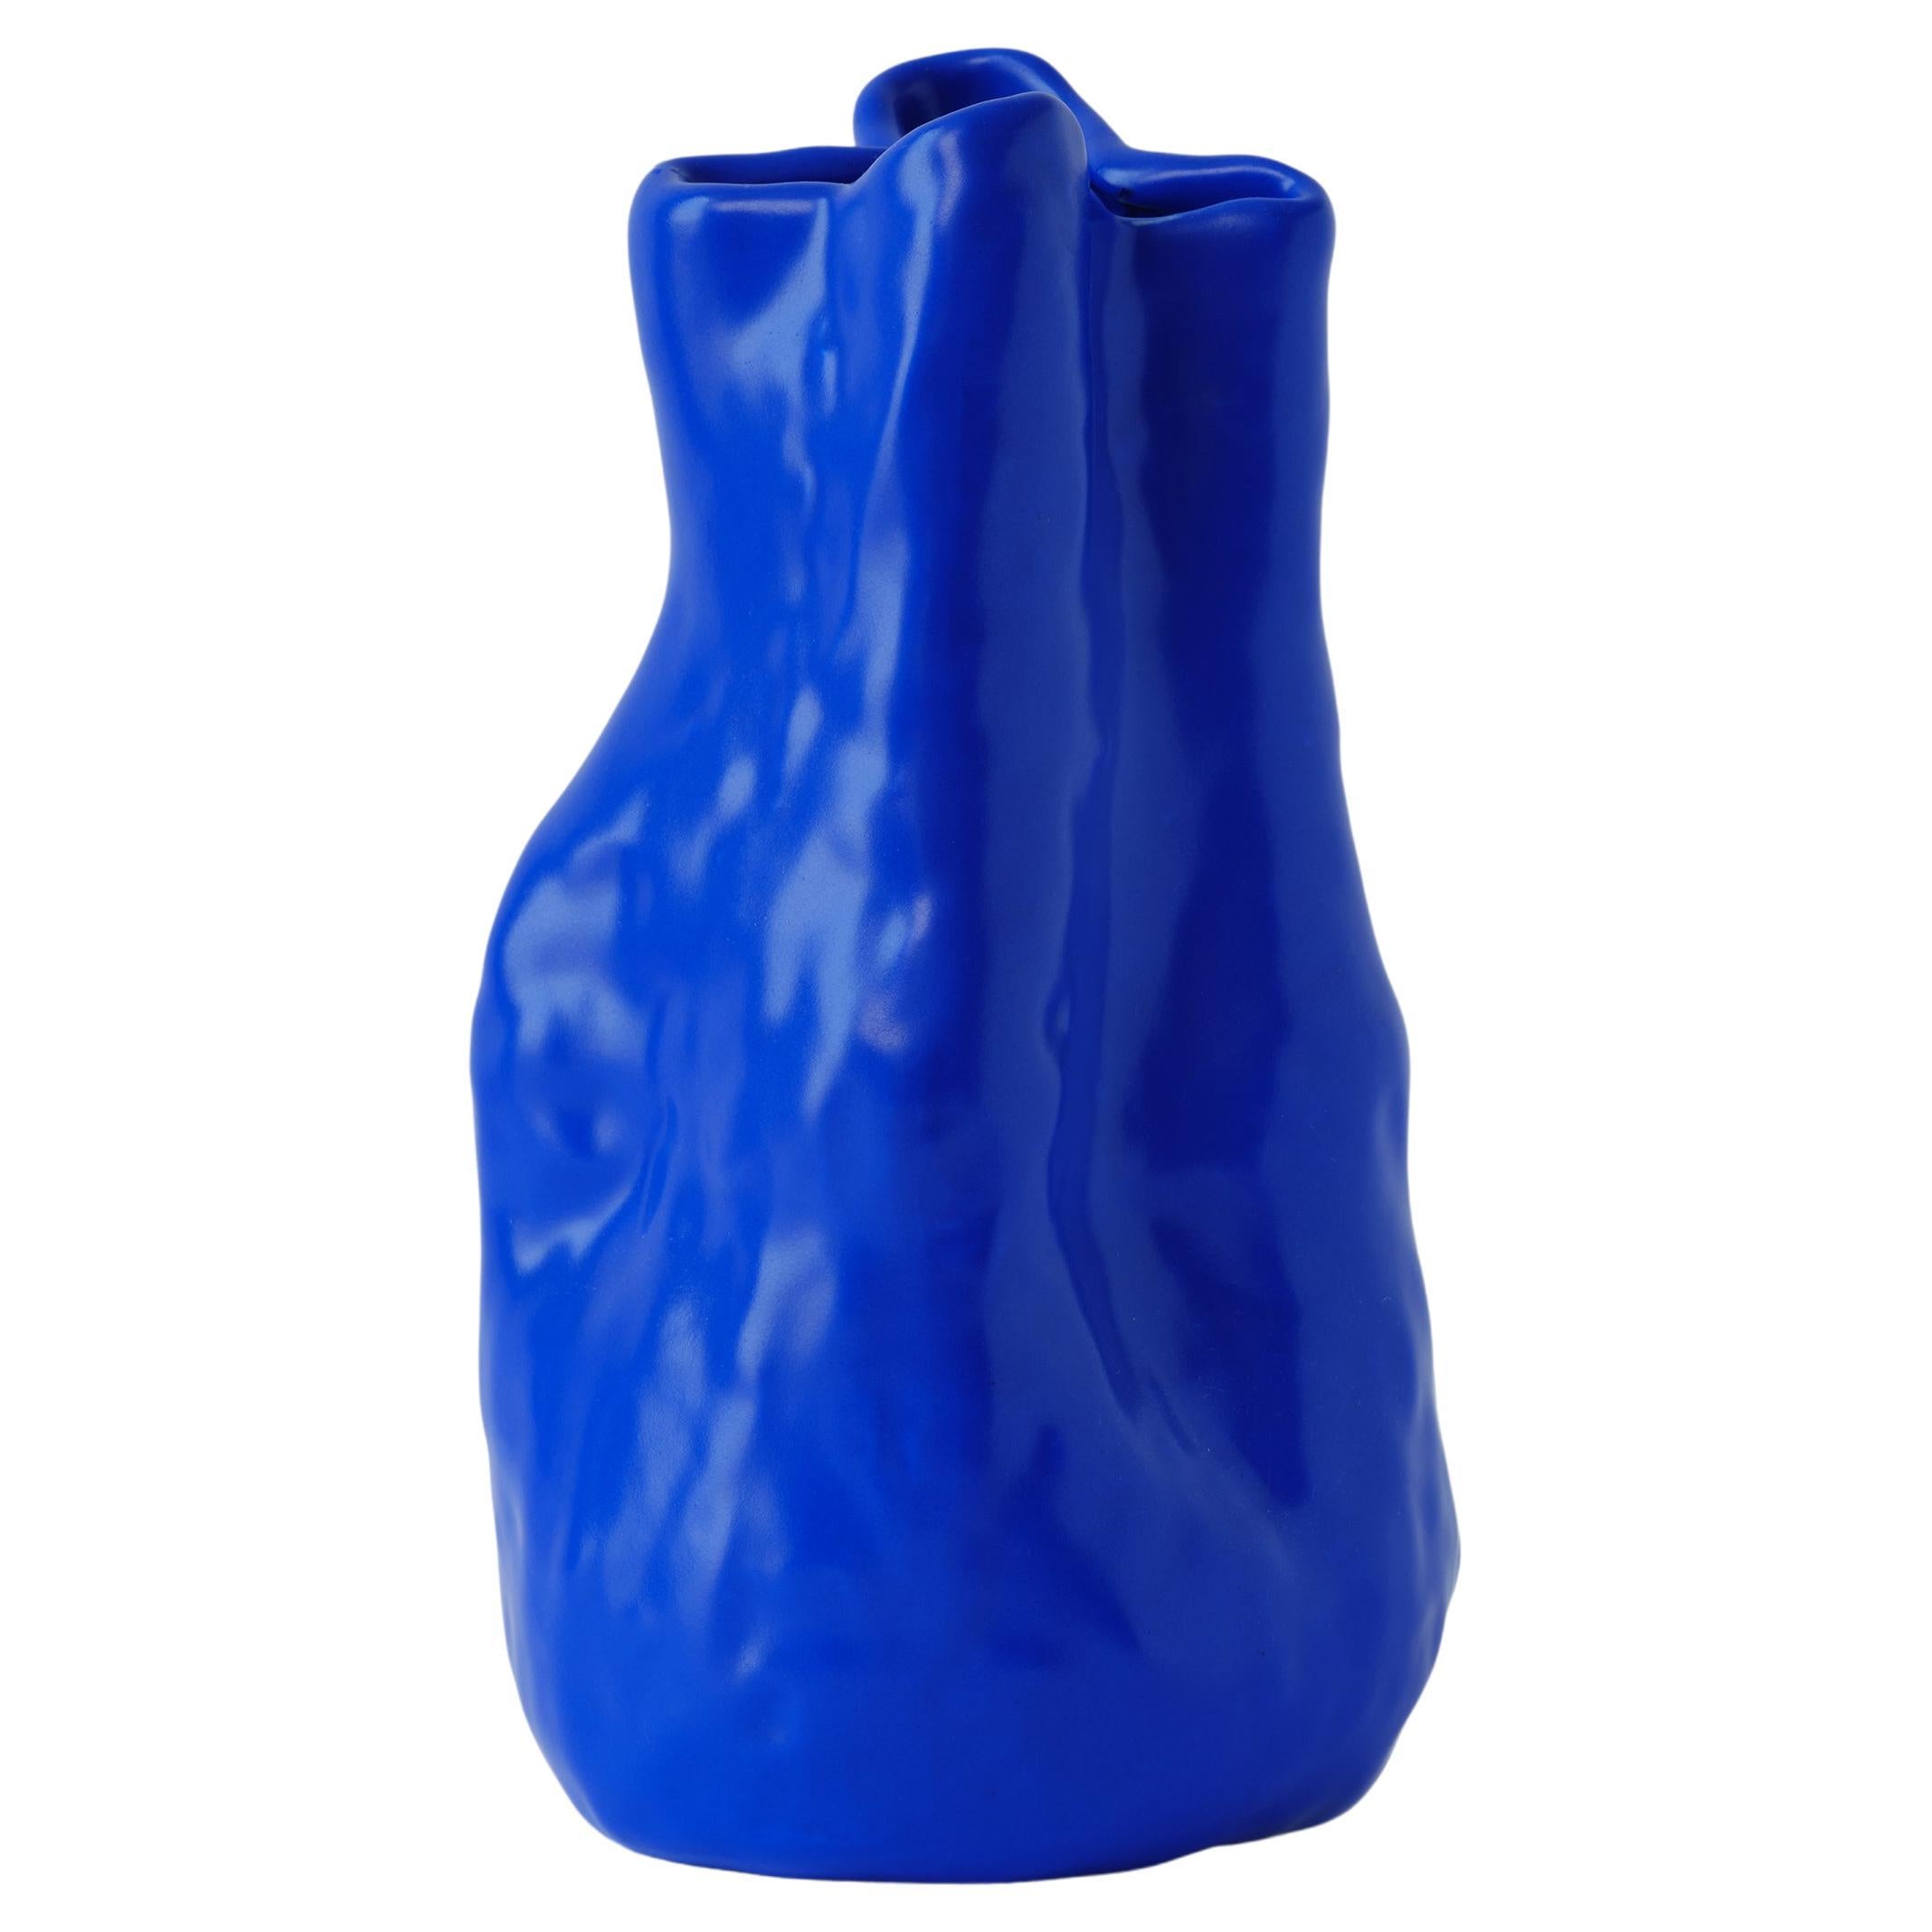 Vase en porcelaine bleu foncé de Géorgie fabriqué à la main